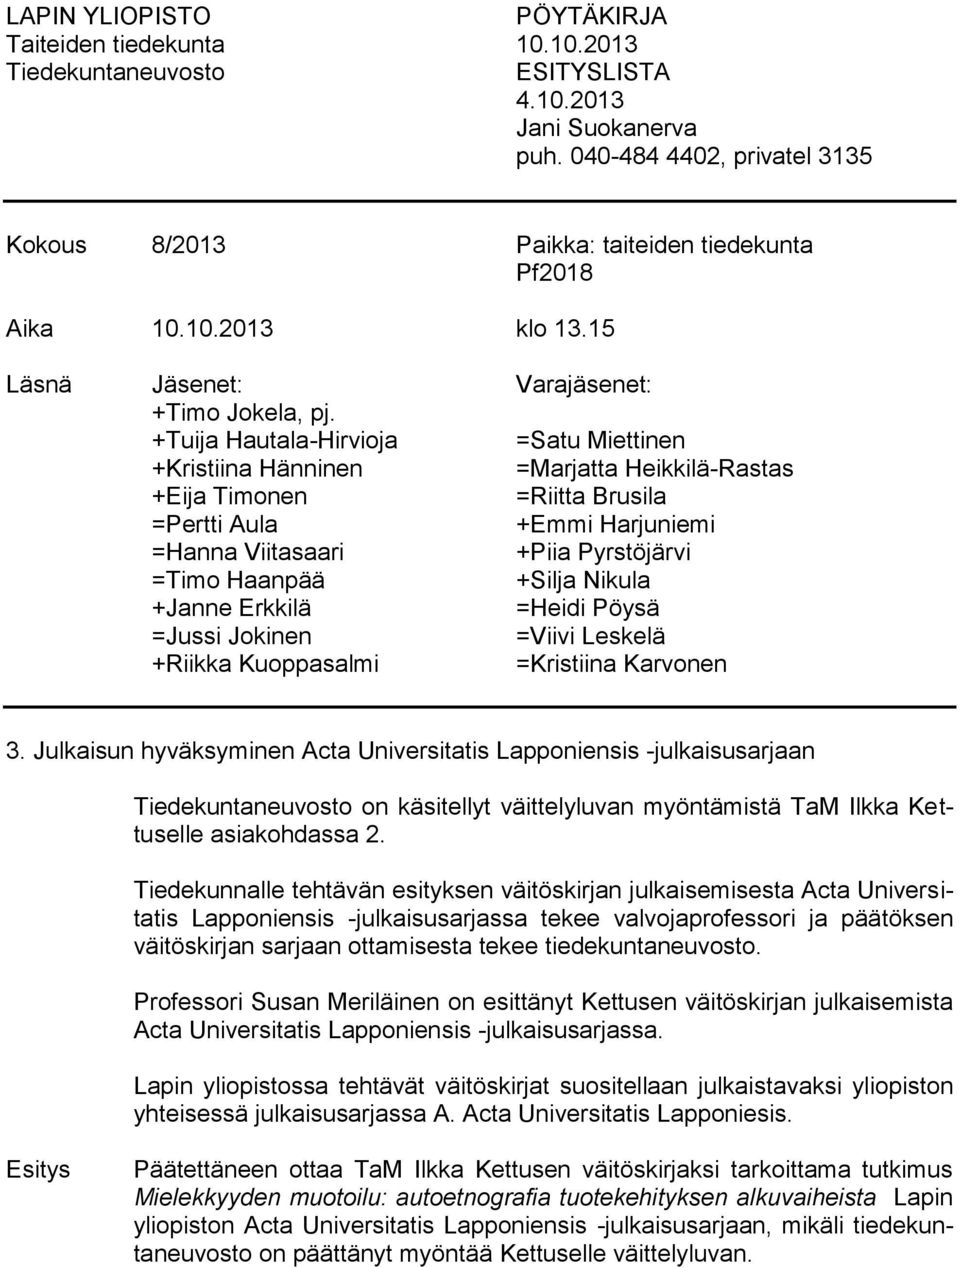 +Tuija Hautala-Hirvioja =Satu Miettinen +Kristiina Hänninen =Marjatta Heikkilä-Rastas +Eija Timonen =Riitta Brusila =Pertti Aula +Emmi Harjuniemi =Hanna Viitasaari +Piia Pyrstöjärvi =Timo Haanpää